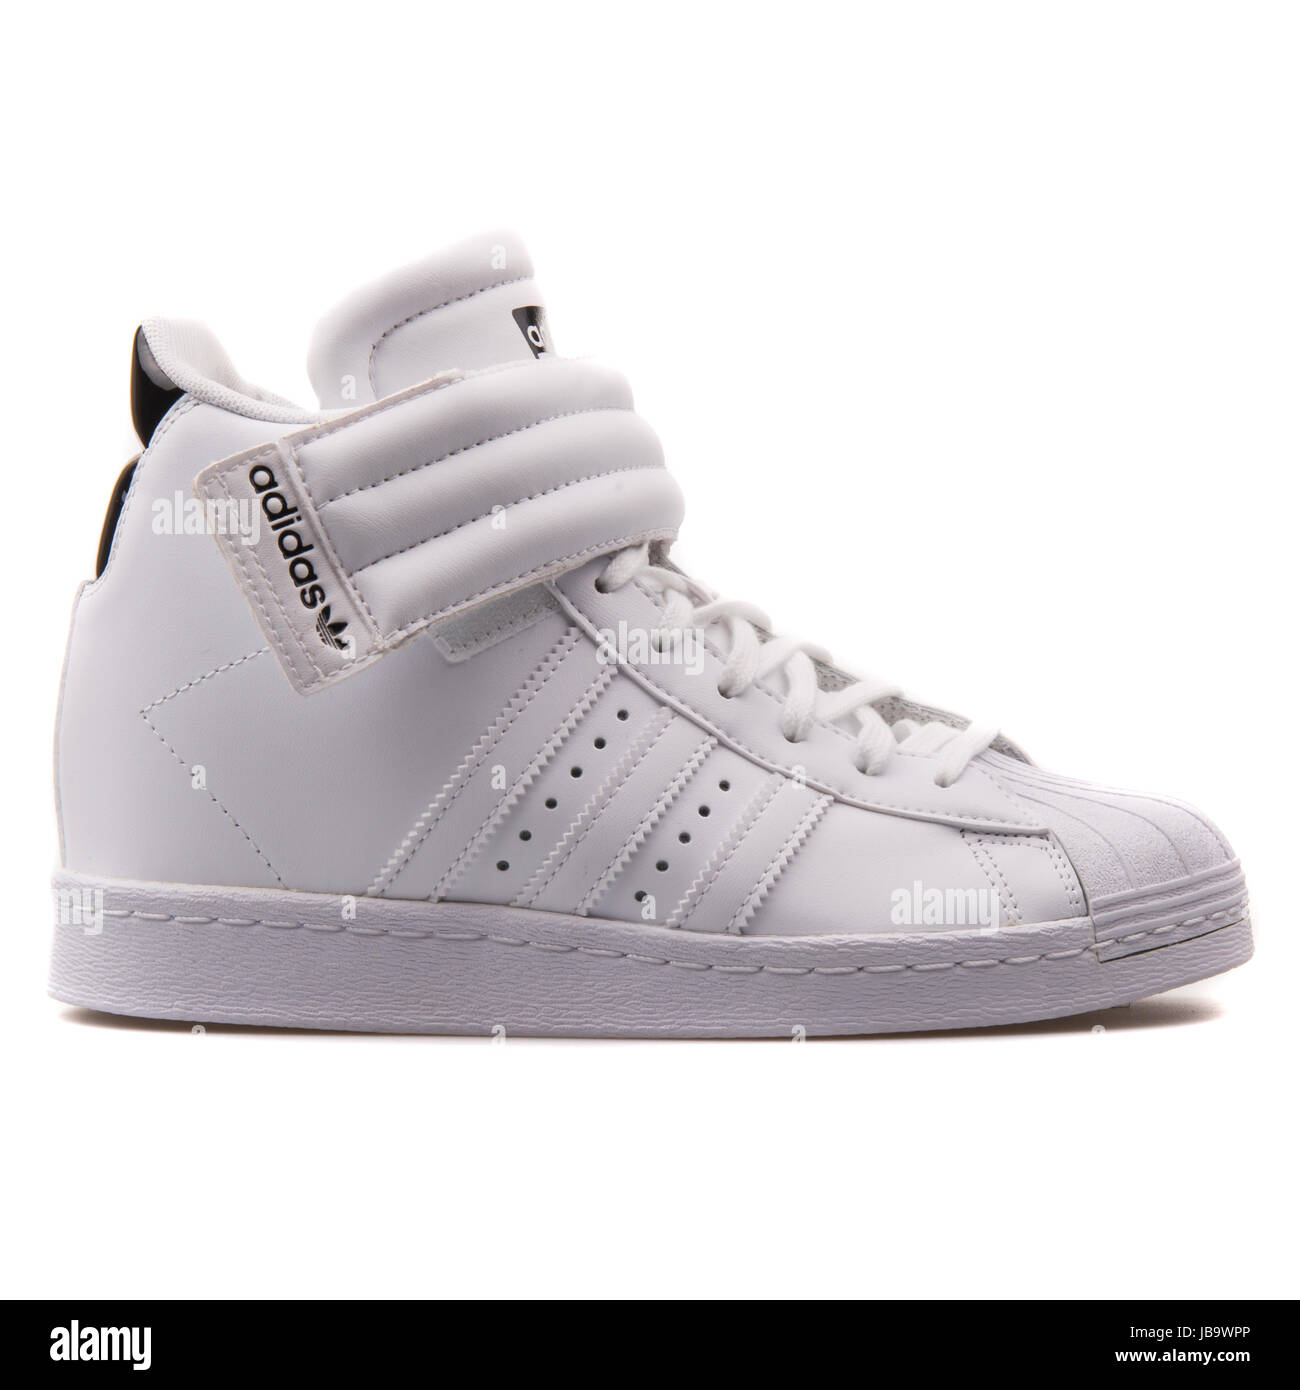 Adidas Superstar pletina W Blanco zapatos de mujer S81351 Fotografía de stock - Alamy